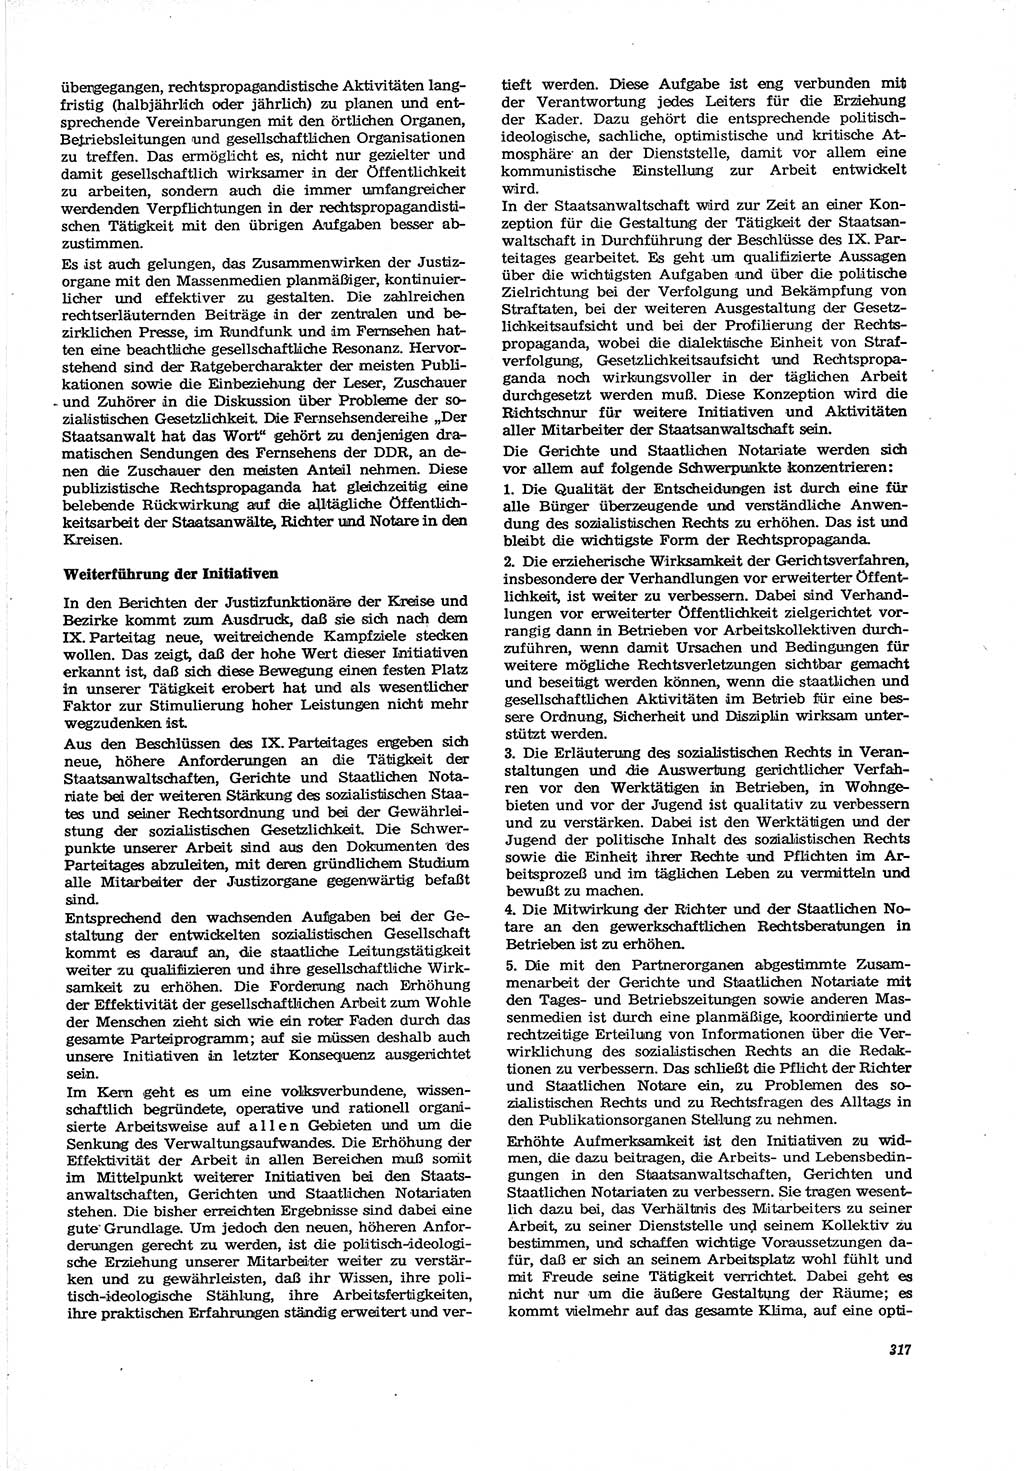 Neue Justiz (NJ), Zeitschrift für Recht und Rechtswissenschaft [Deutsche Demokratische Republik (DDR)], 30. Jahrgang 1976, Seite 317 (NJ DDR 1976, S. 317)